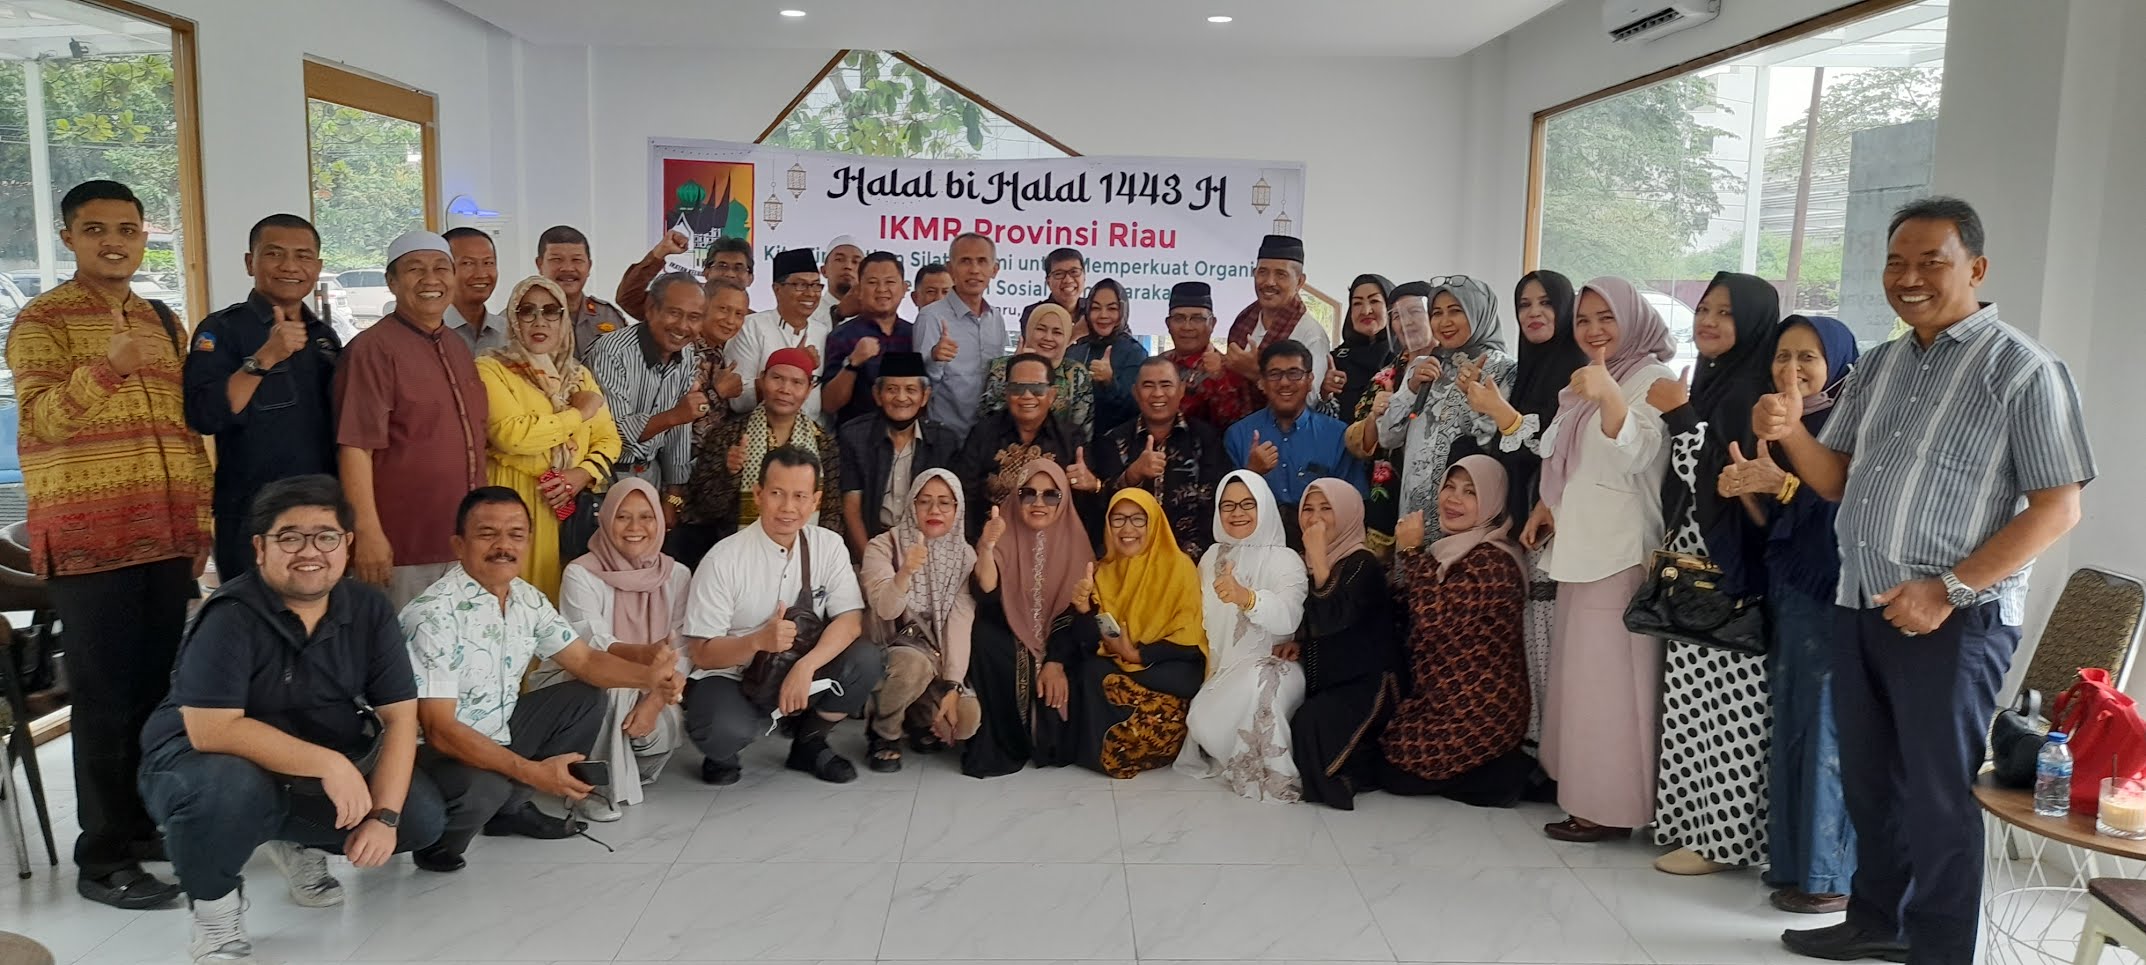 Pengurus IKMR Riau Dilantik Sabtu Mendatang, Akan Ada Sesi Bedah Buku